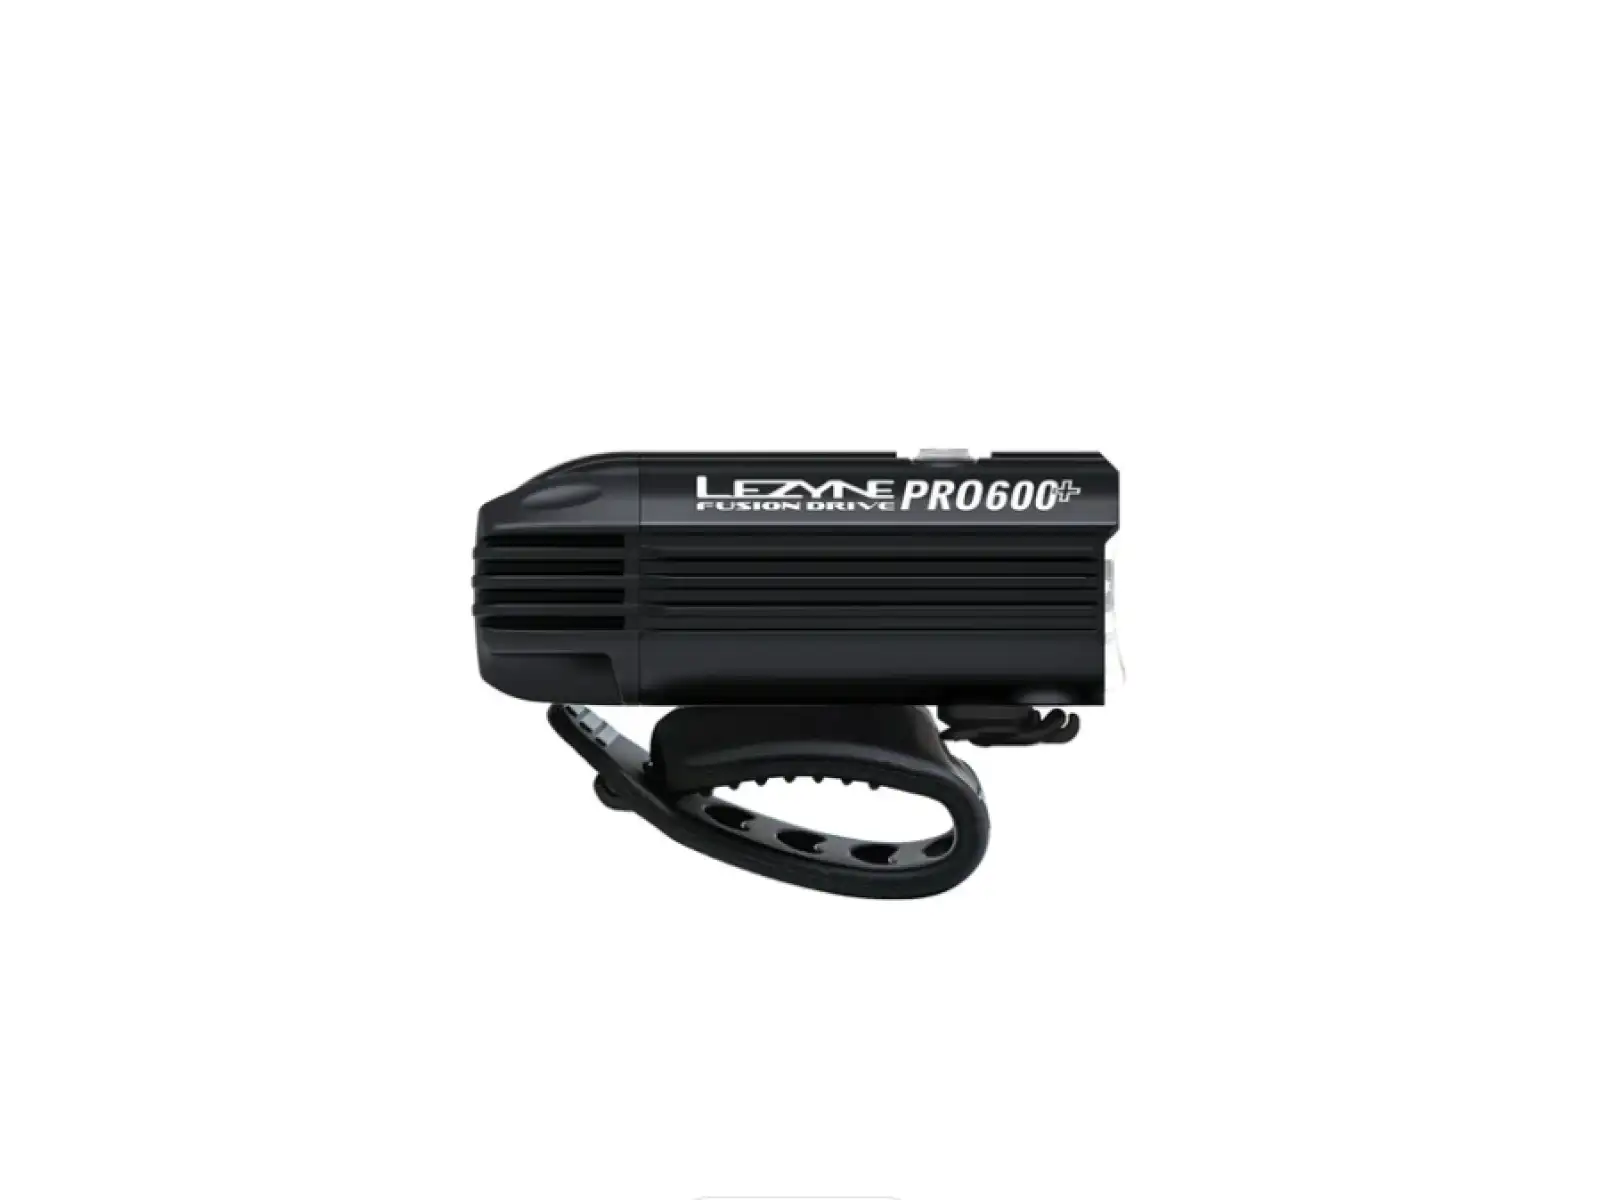 Lezyne Fusion Drive Pro 600+ Front přední světlo Satin Black